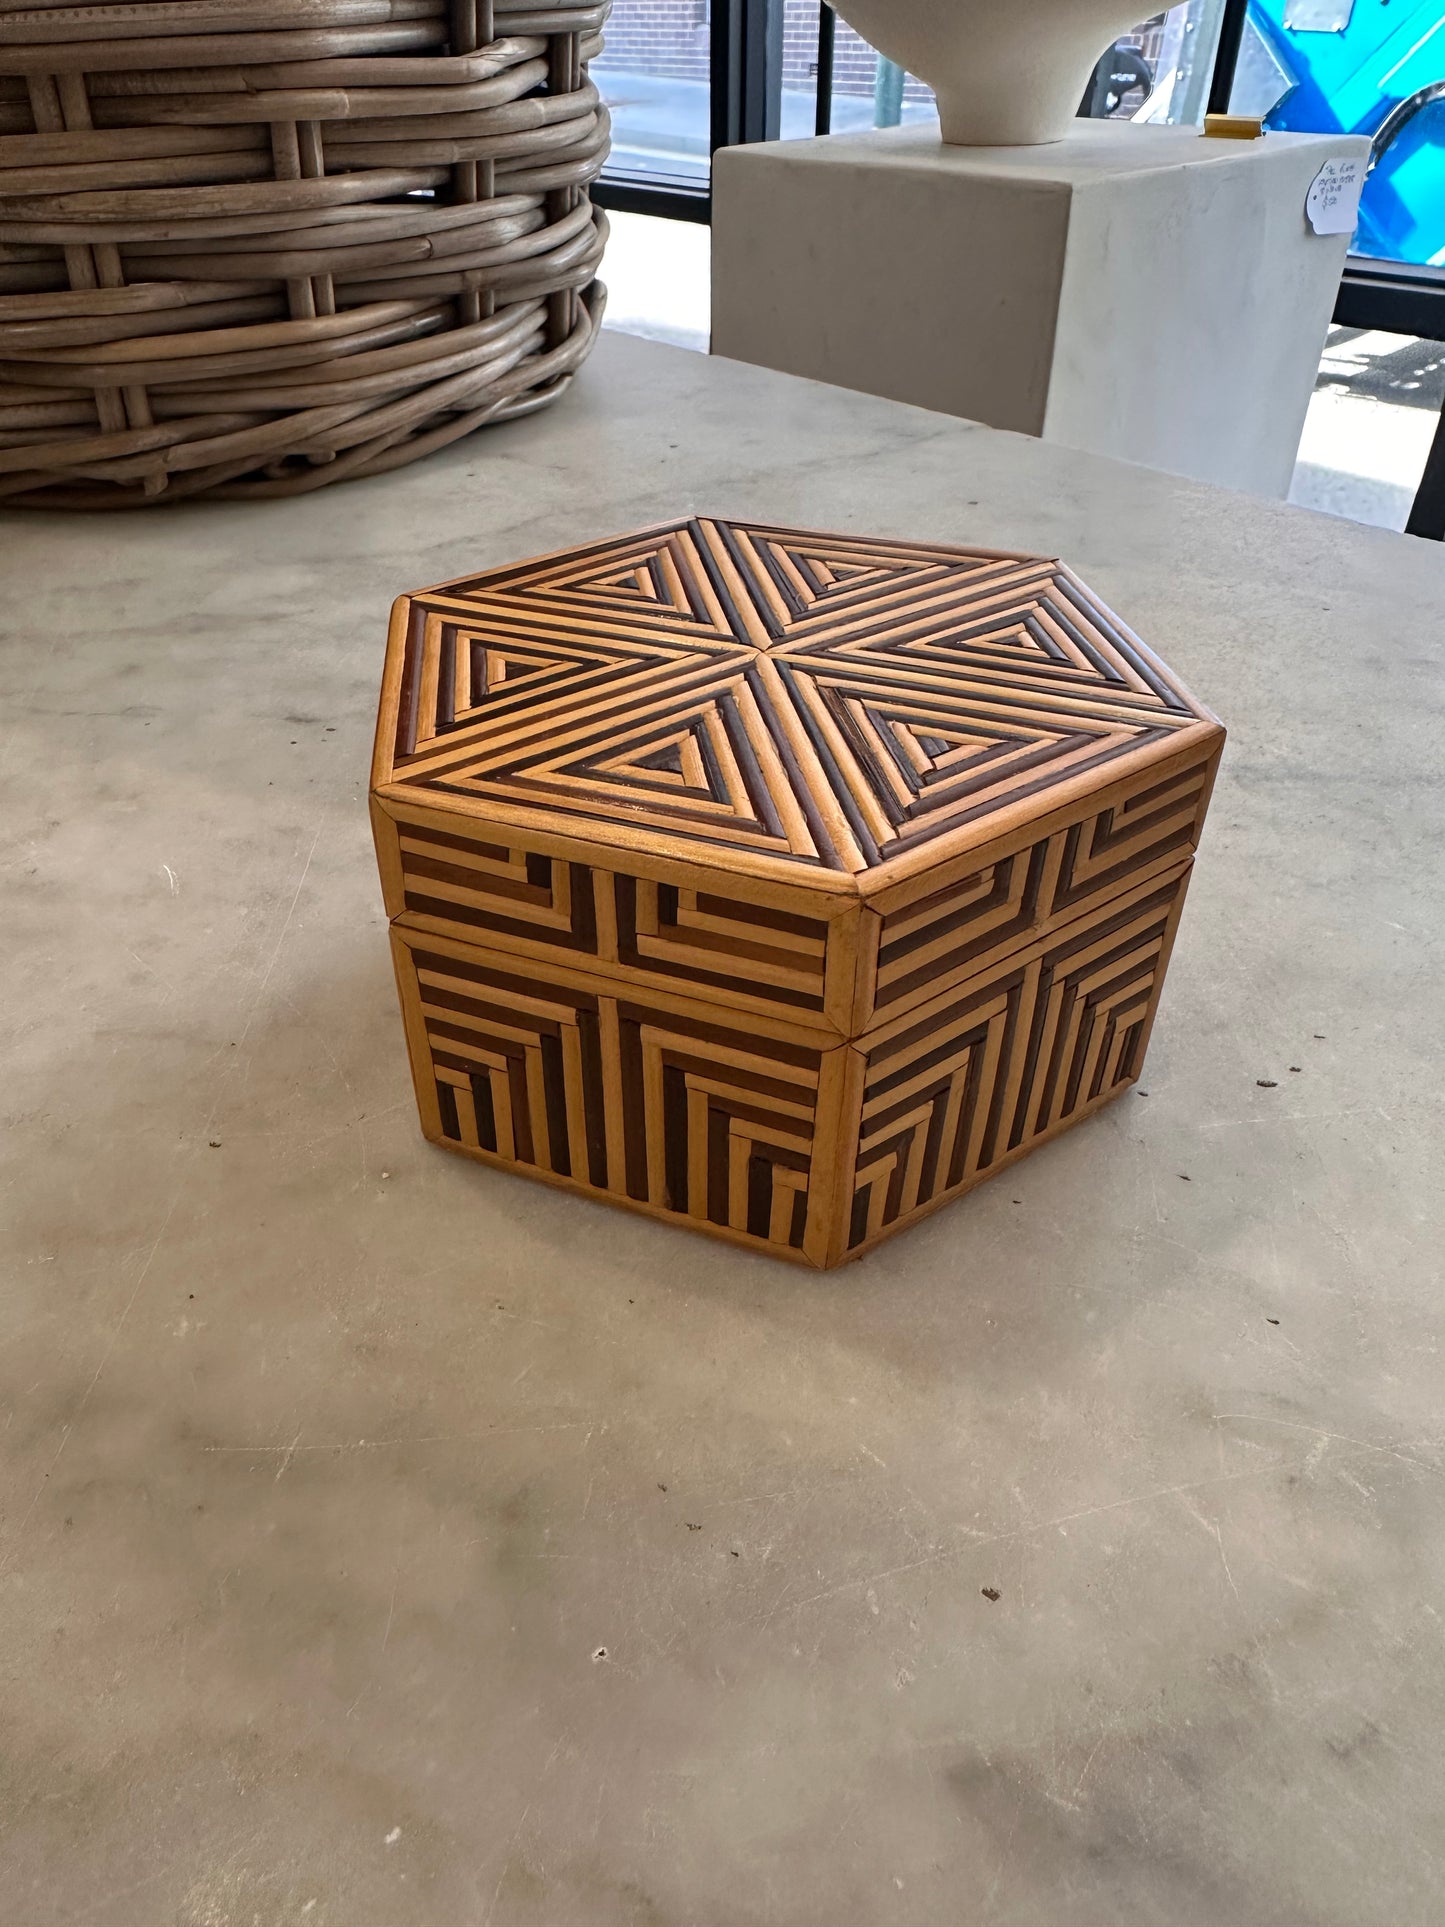 Bamboo Hexagon Box